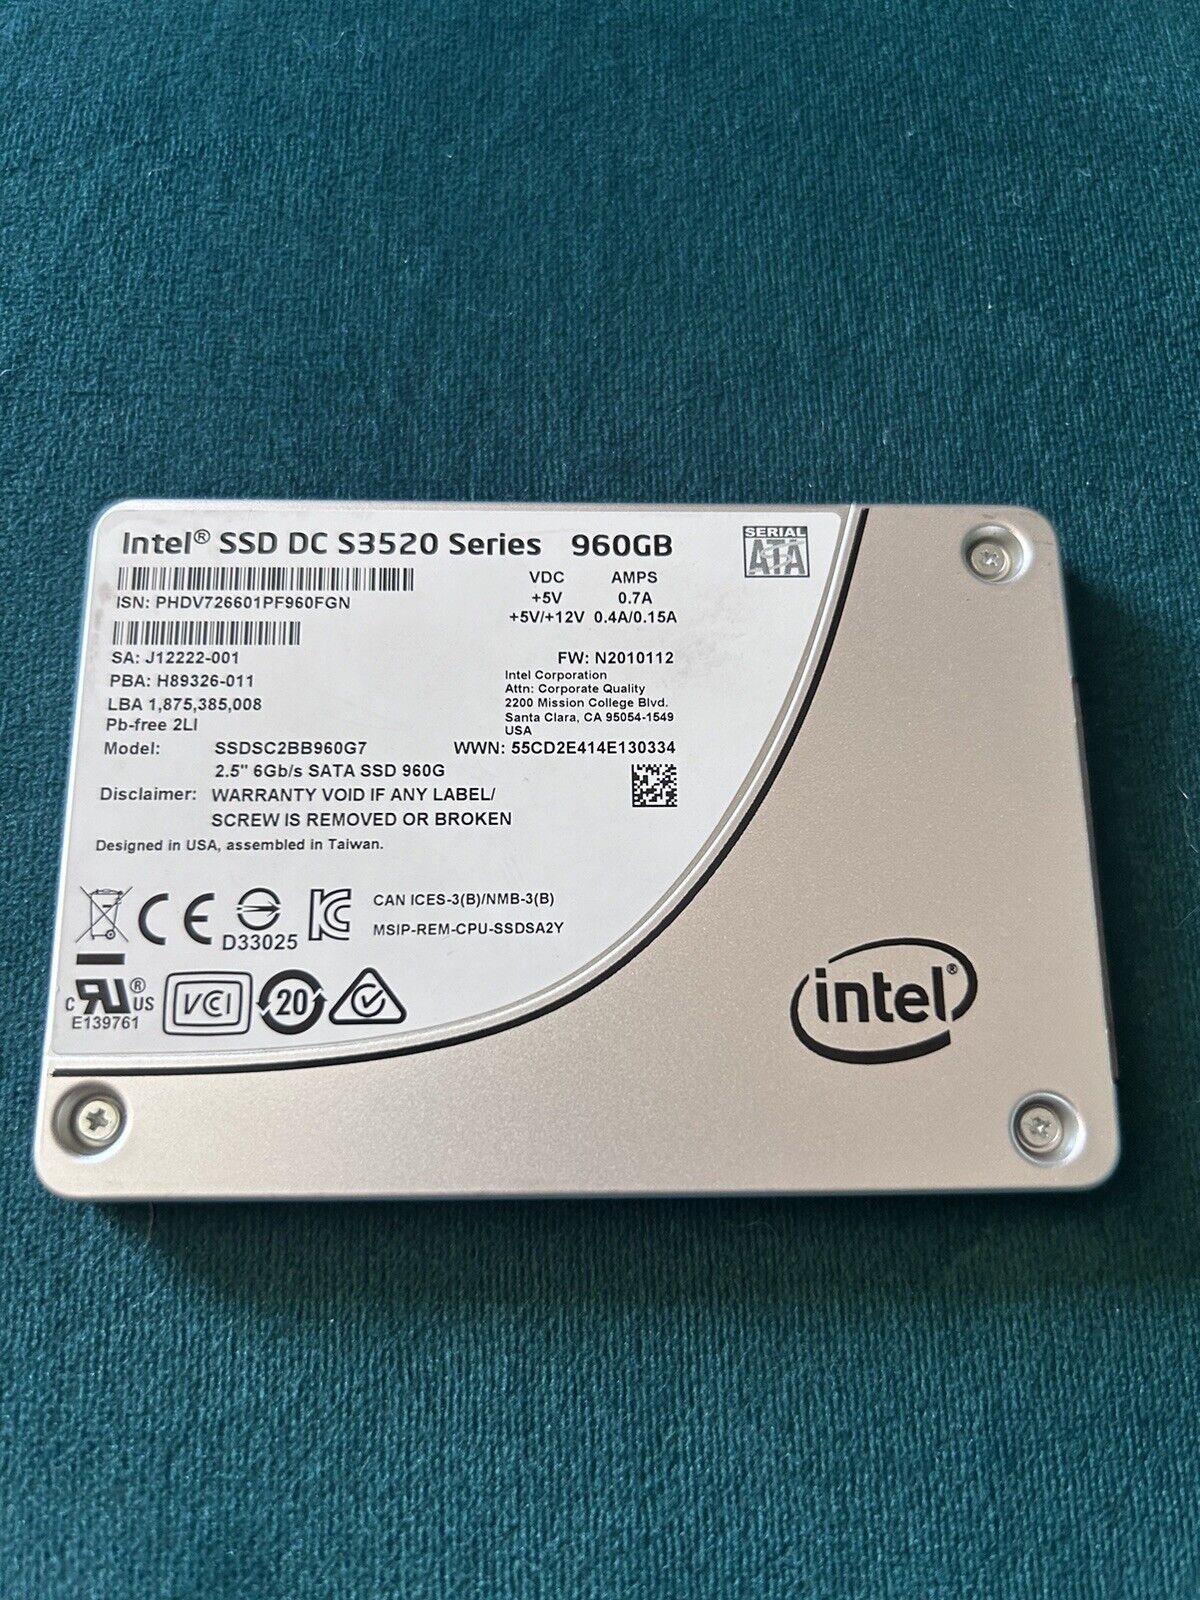 Intel DC S3520 Series 960GB,Internal,2.5 inch (SSDSC2BB960G7) Solid State Drive